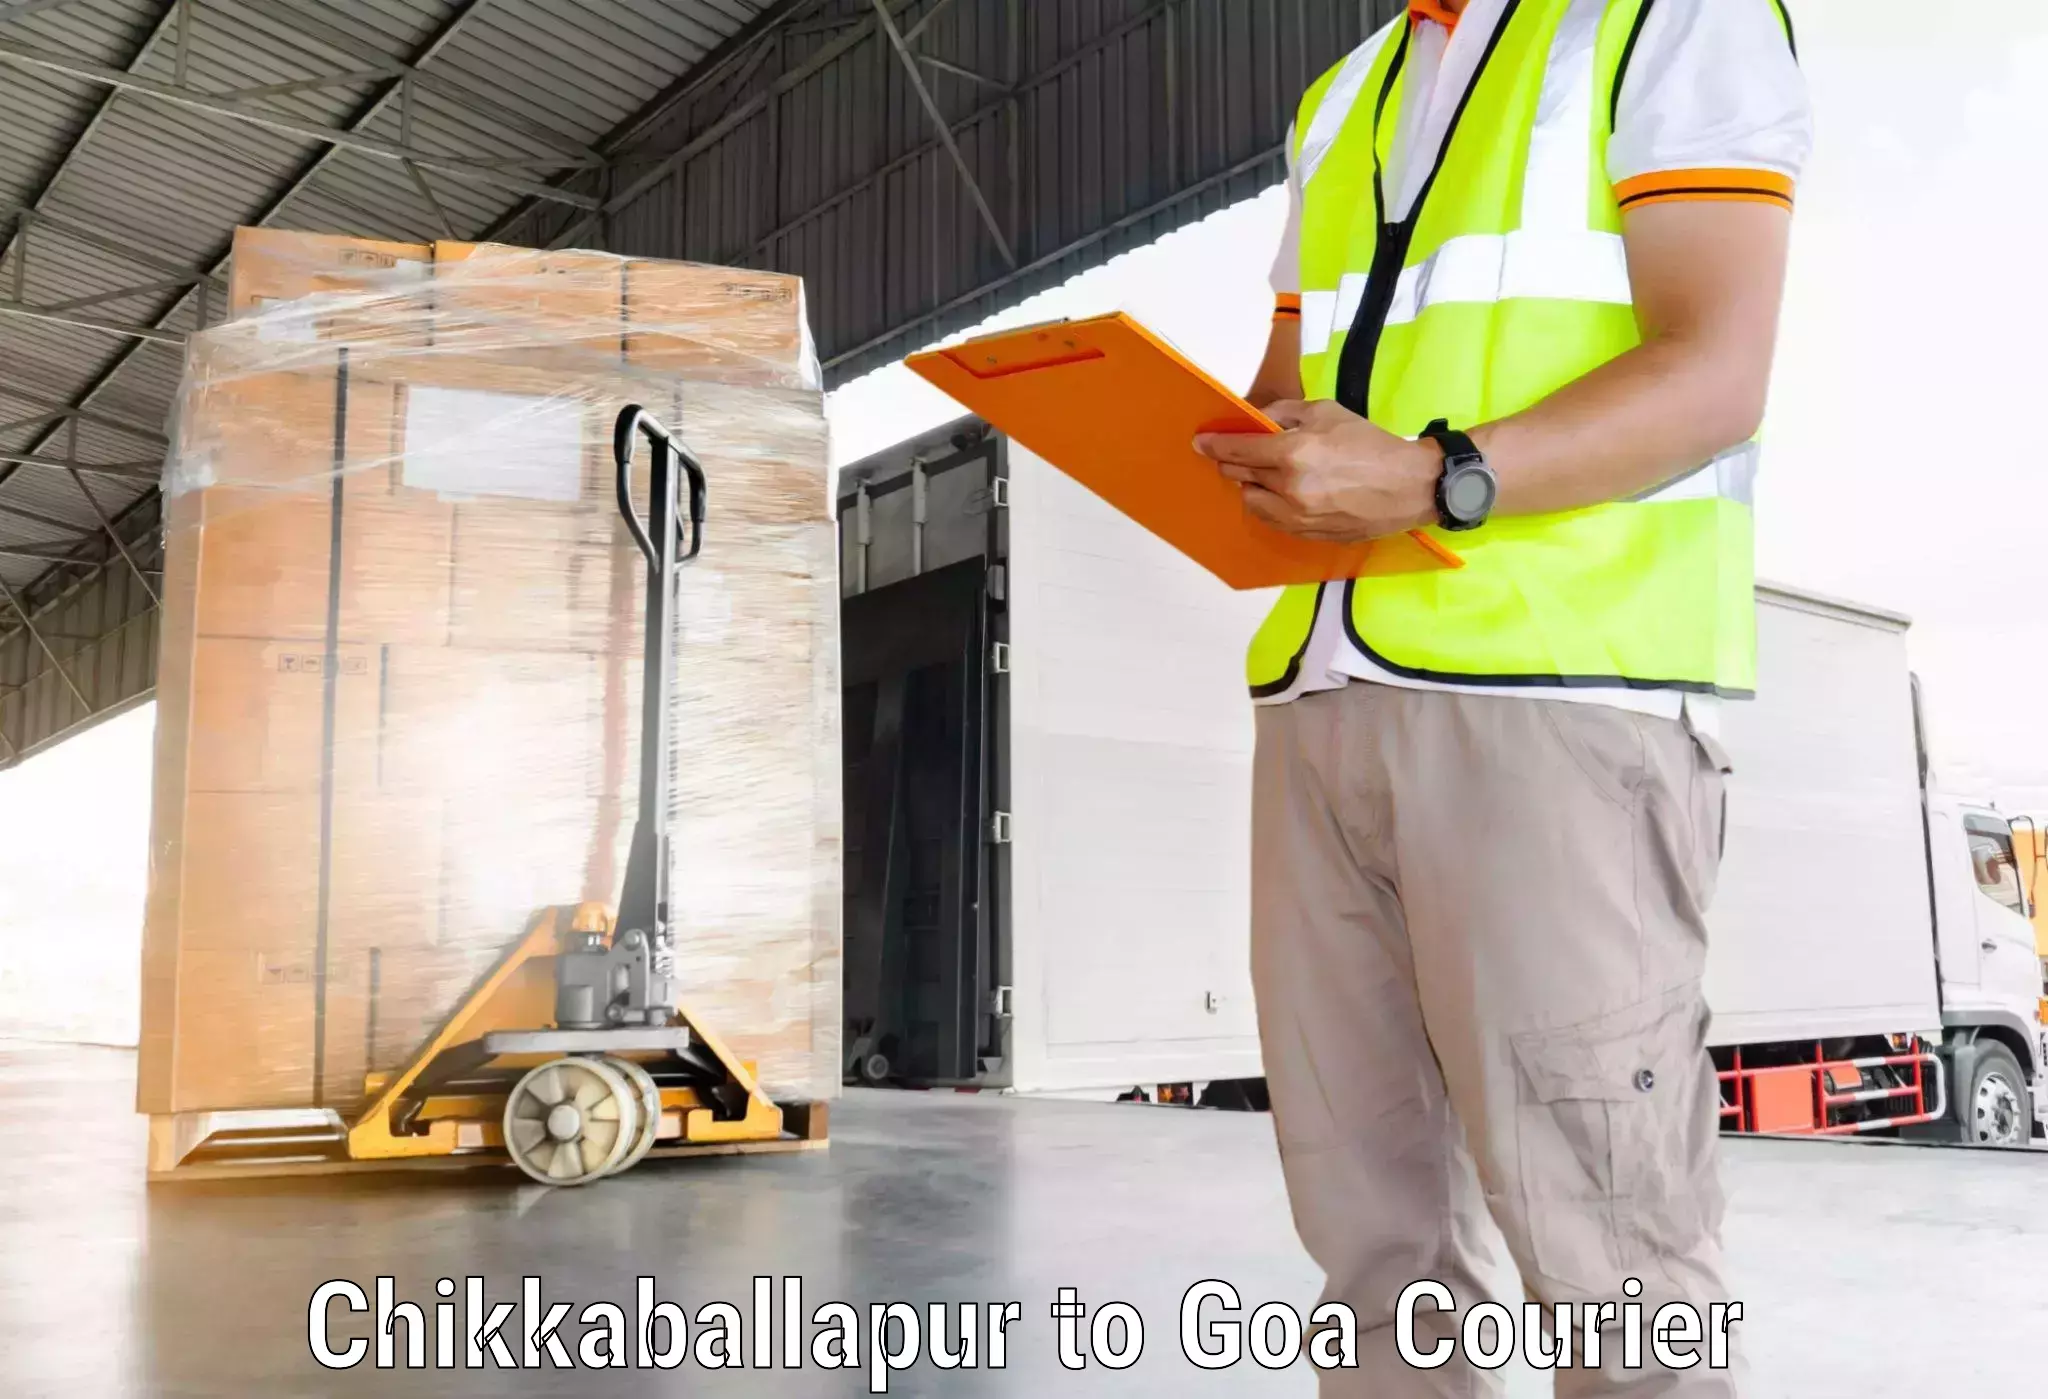 Courier service comparison in Chikkaballapur to Sanvordem